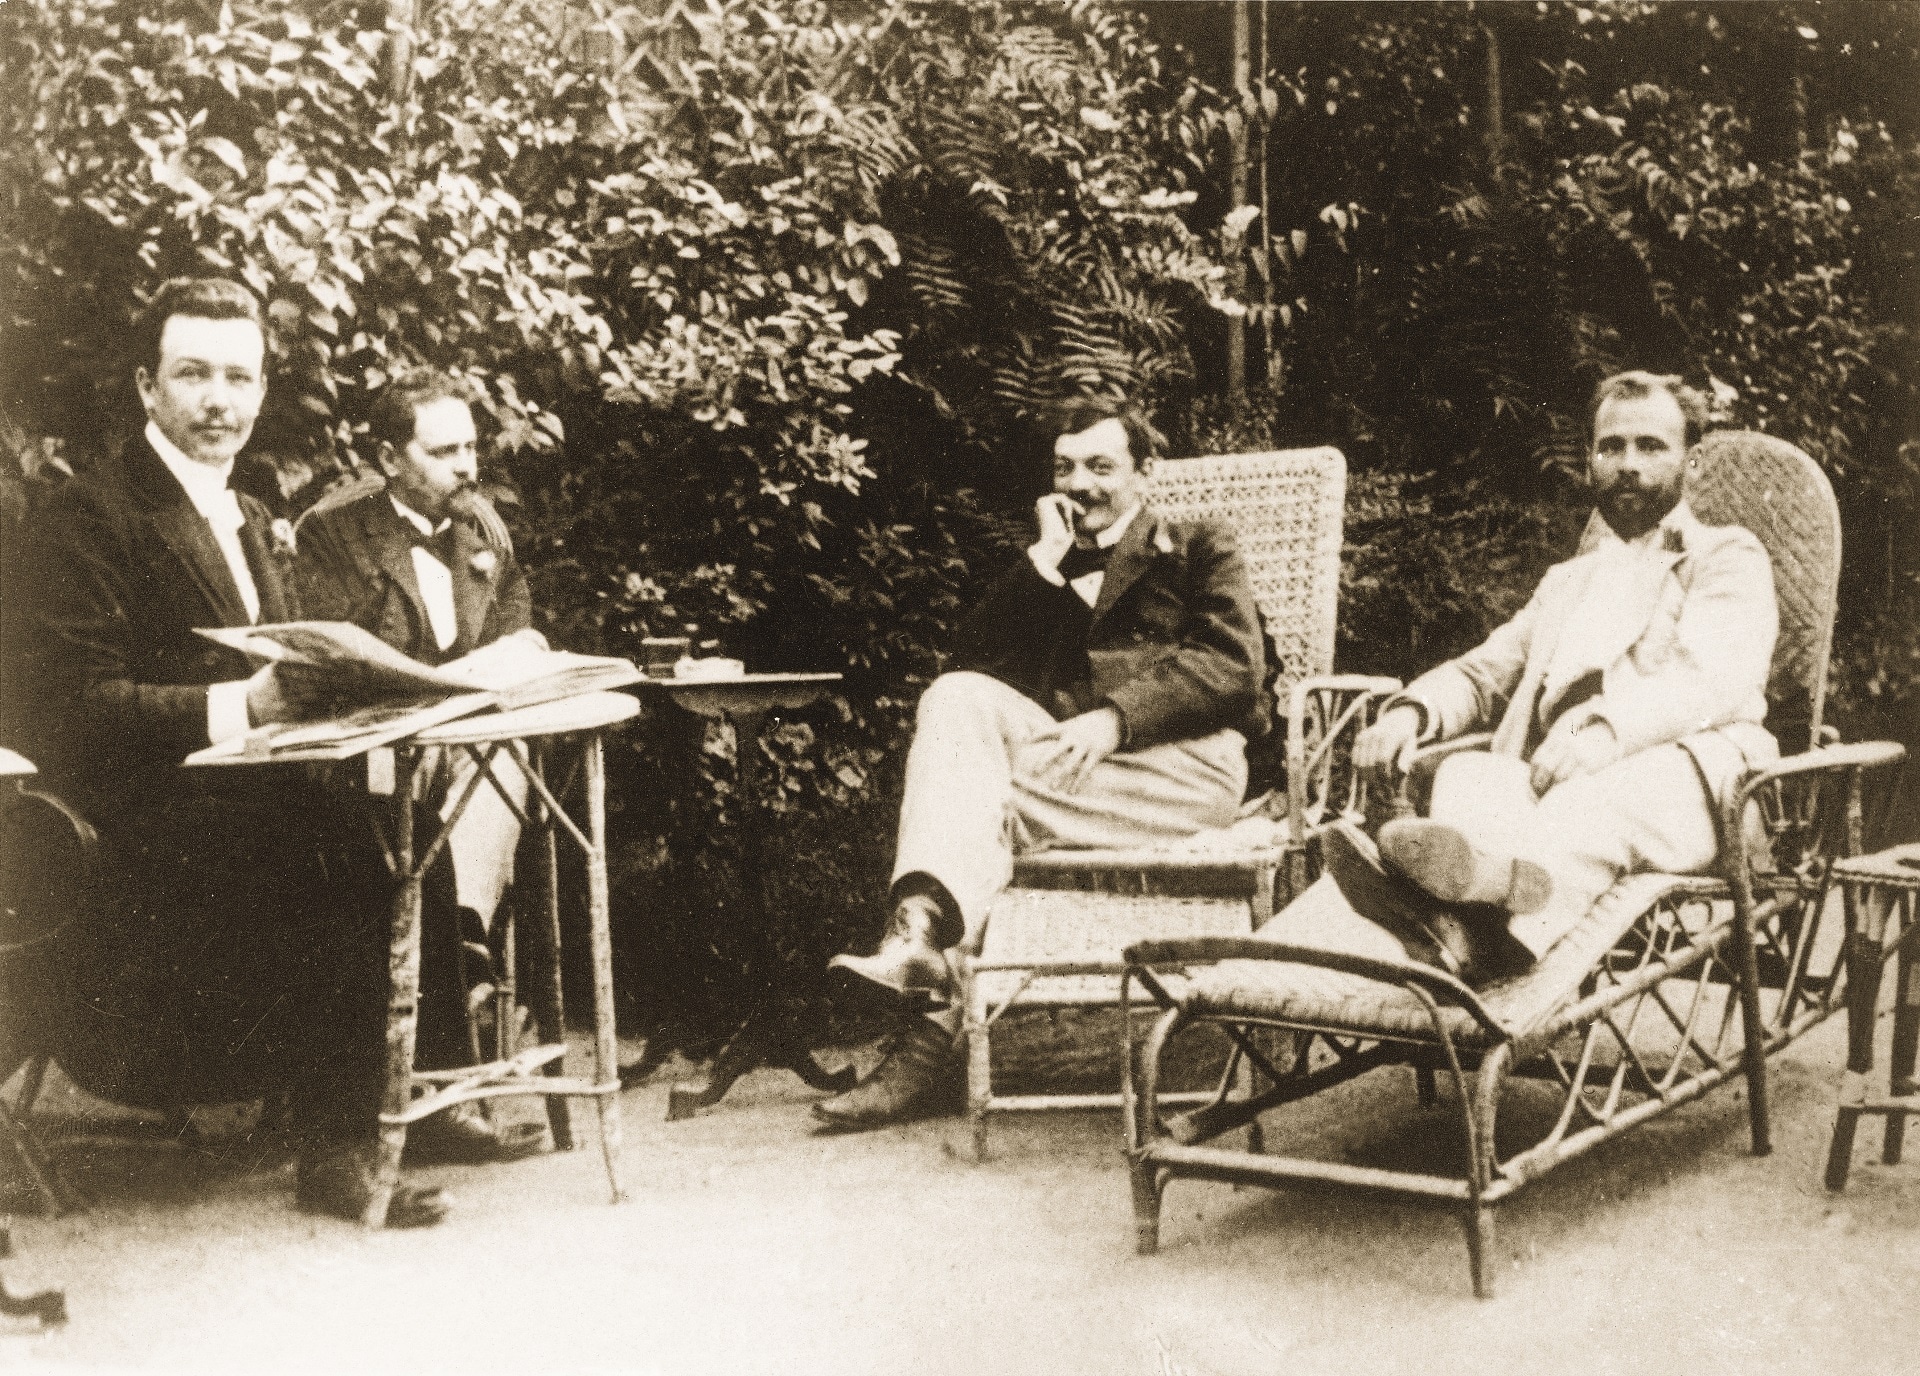 Fotografia di Joseph Maria Olbrich (a sinistra), uno sconosciuto e Kolo Moser e Gustav Klimt (a destra), 1898 circa, Vienna, Austria